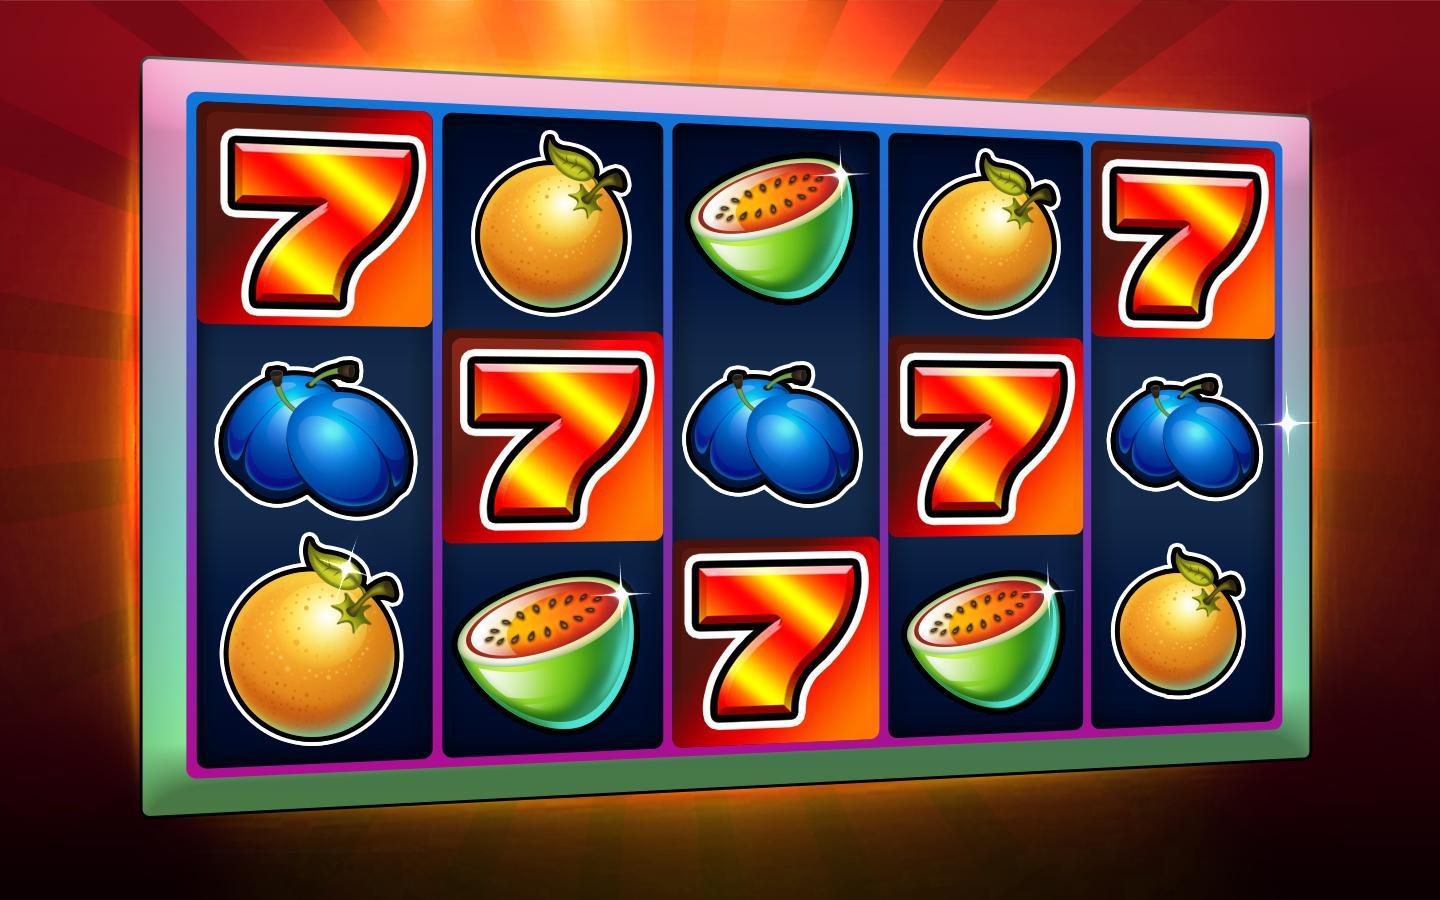 Ra slots - casino slot machines 1.7.2 Screenshot 5